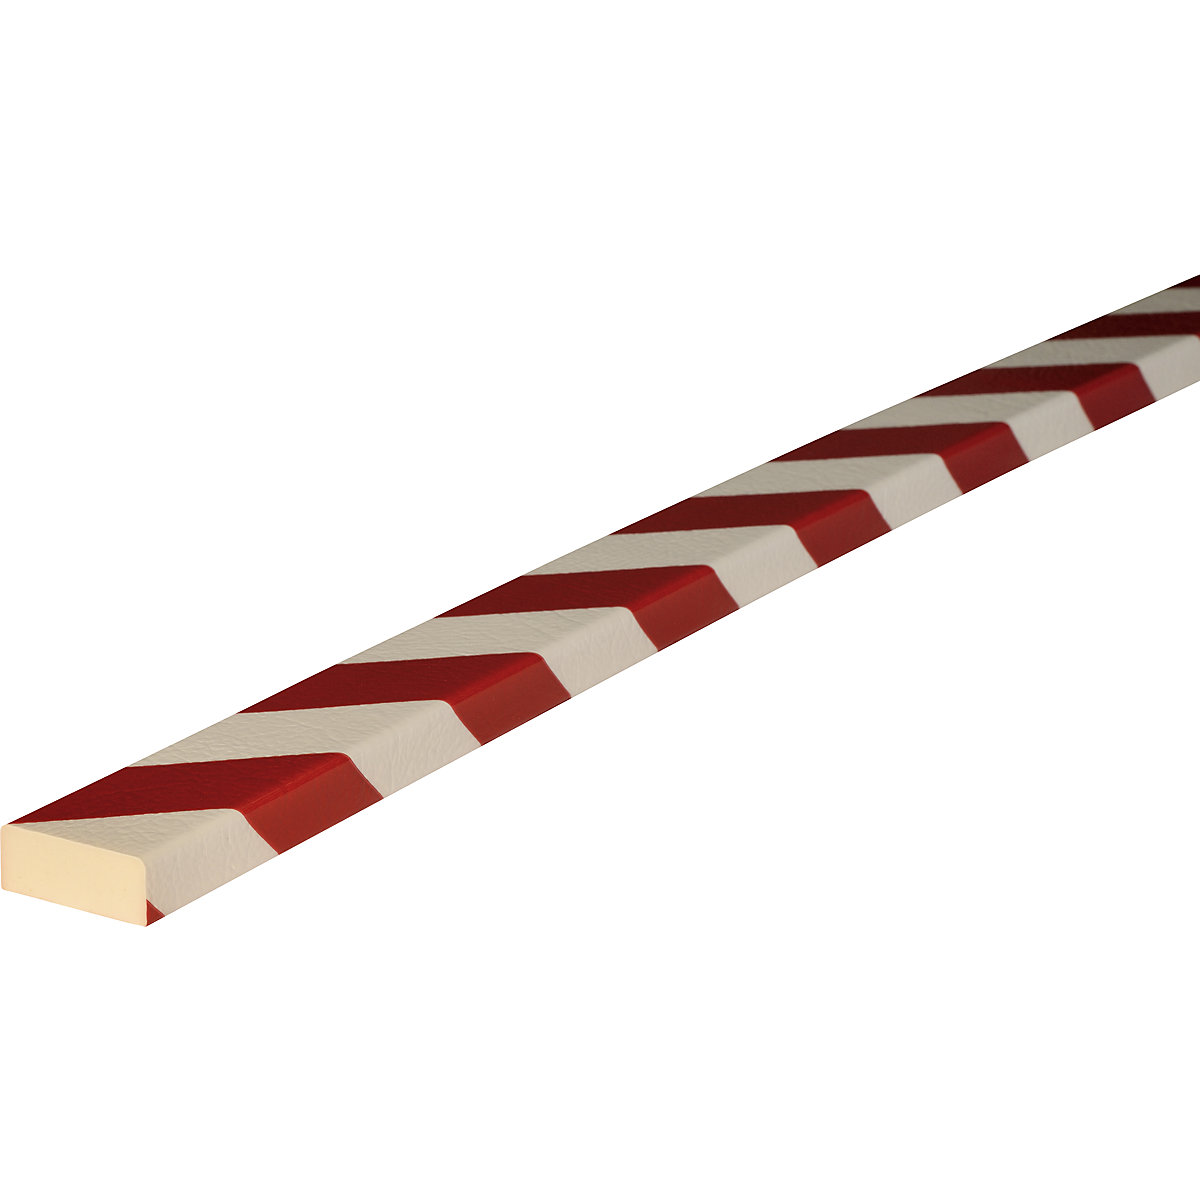 Zabezpieczenie powierzchni Knuffi® – SHG, typ D, szt. 1 m, czerwony / biały-19